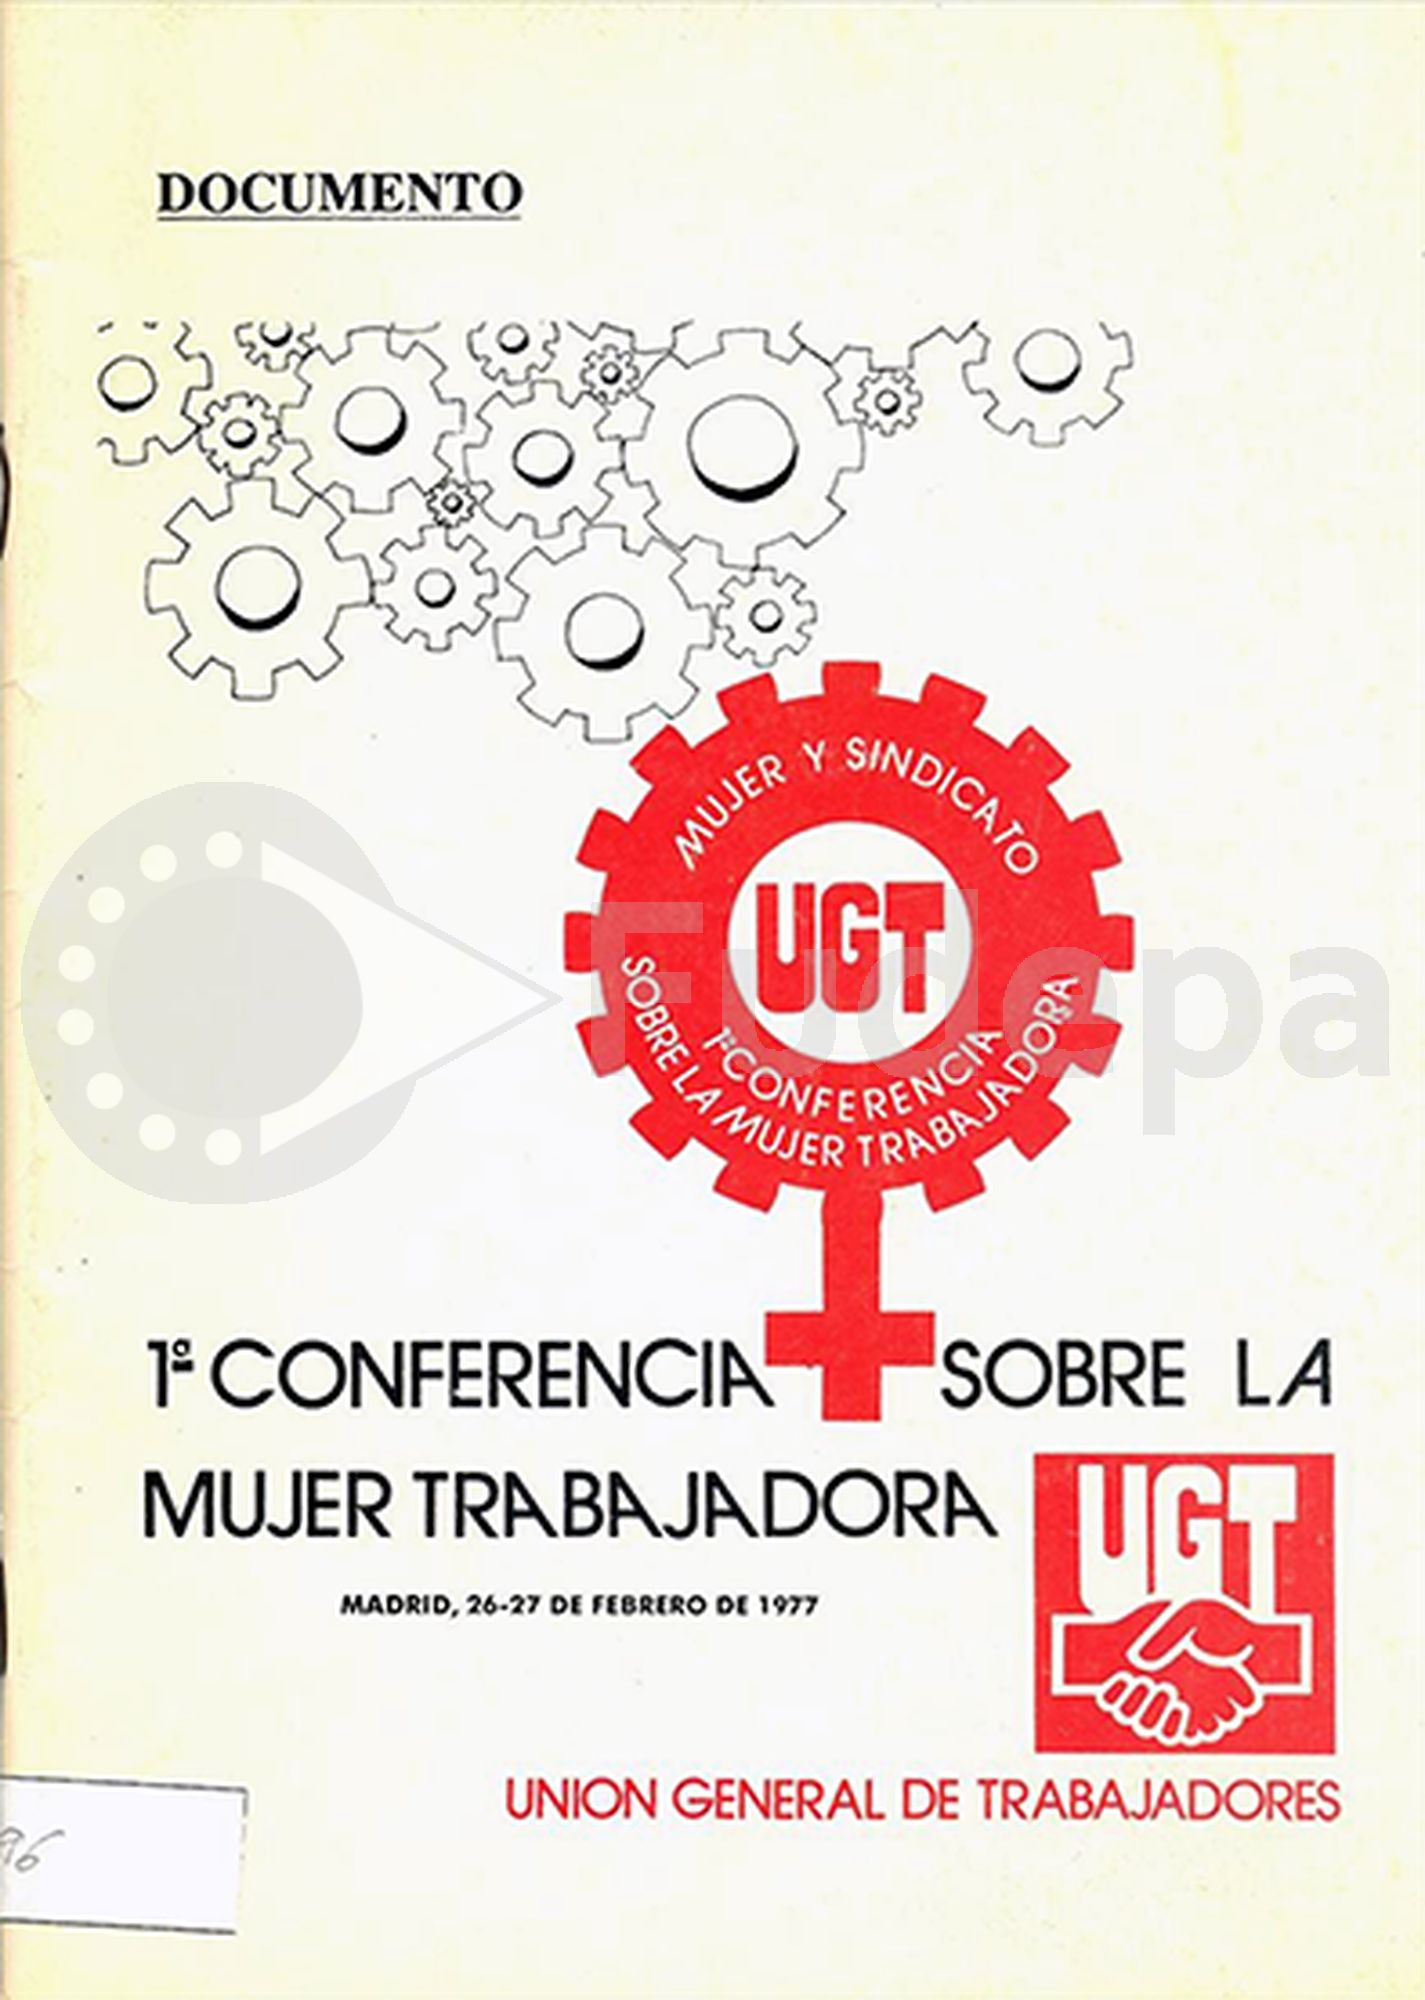 1ª Conferencia sobre la Mujer Trabajadora. Madrid, 26-27 de febrero de 1977 (Documento). UGT, DL. 1978. R1.496